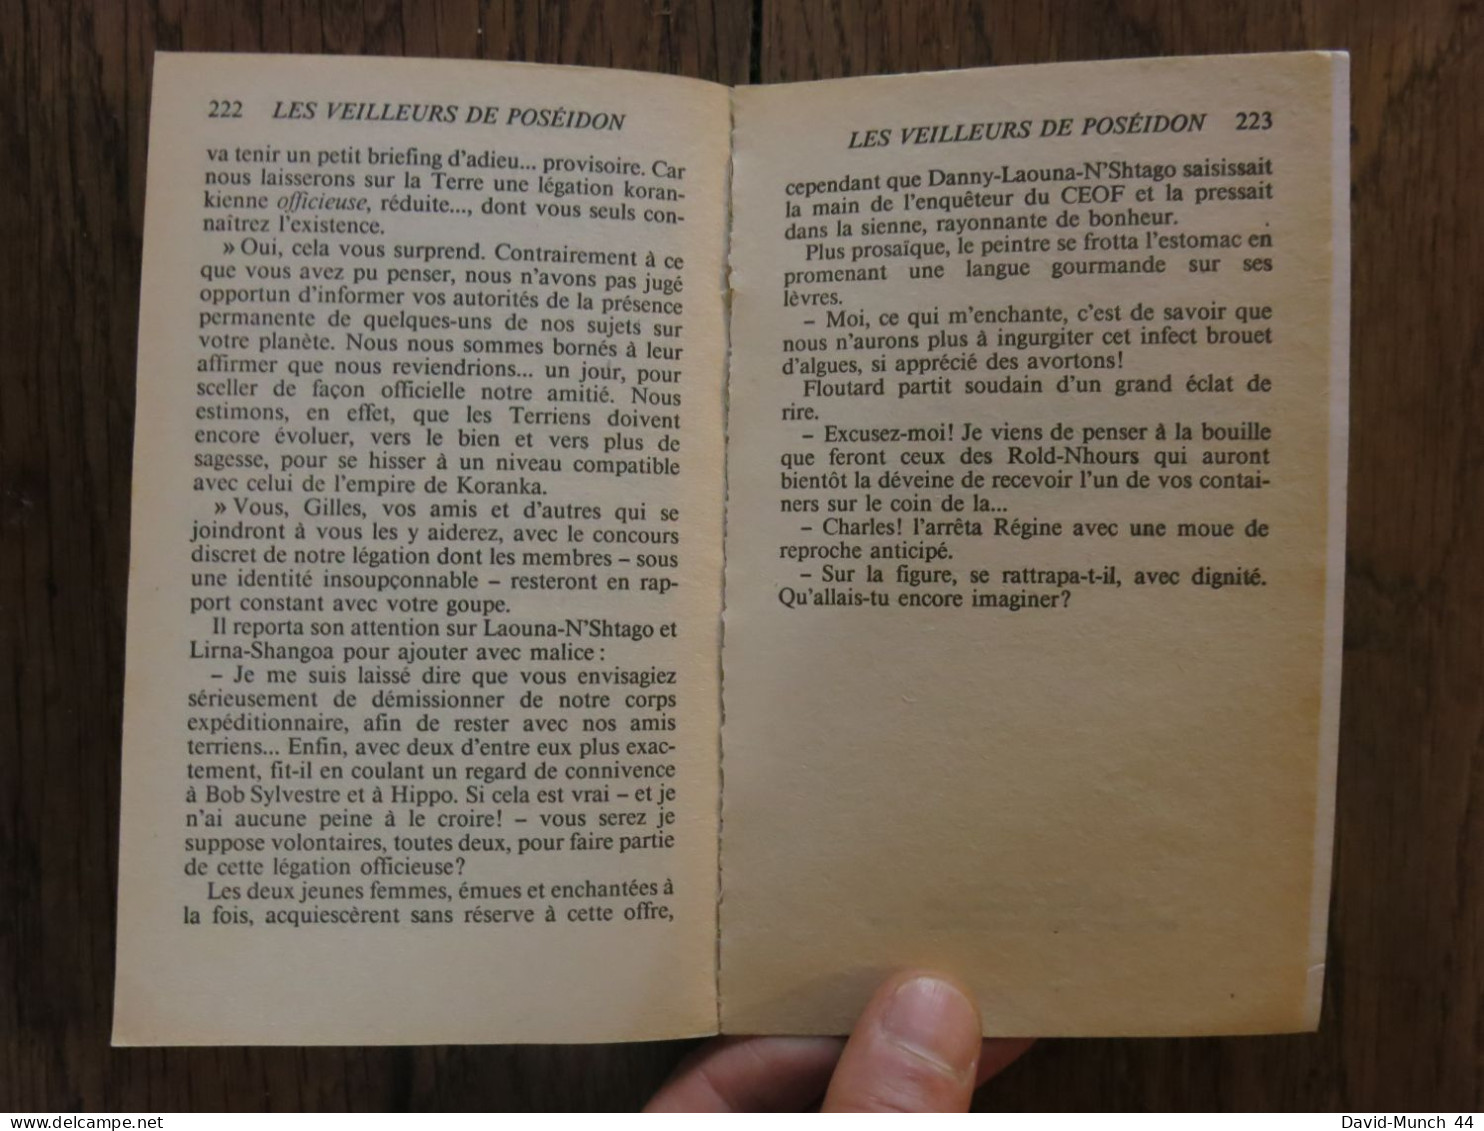 Les Veilleurs de Poséidon de Jimmy Guieu. Presses de la cité, Collection Science-fiction Jimmy Guieu n° 67. 1988